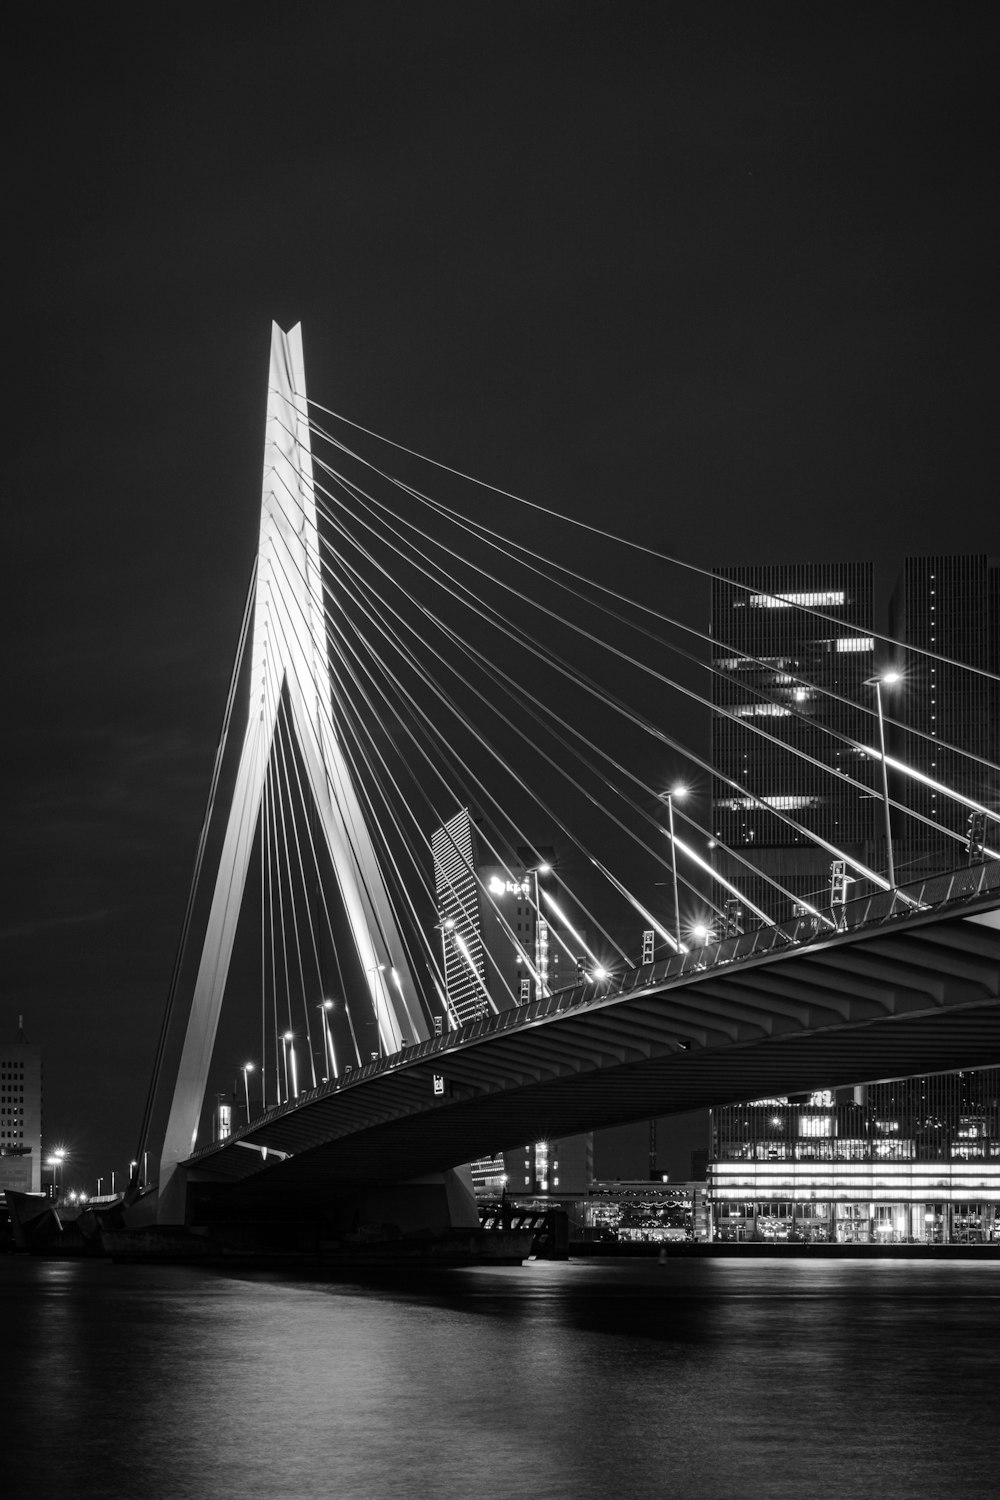 夜間の橋のグレースケール写真